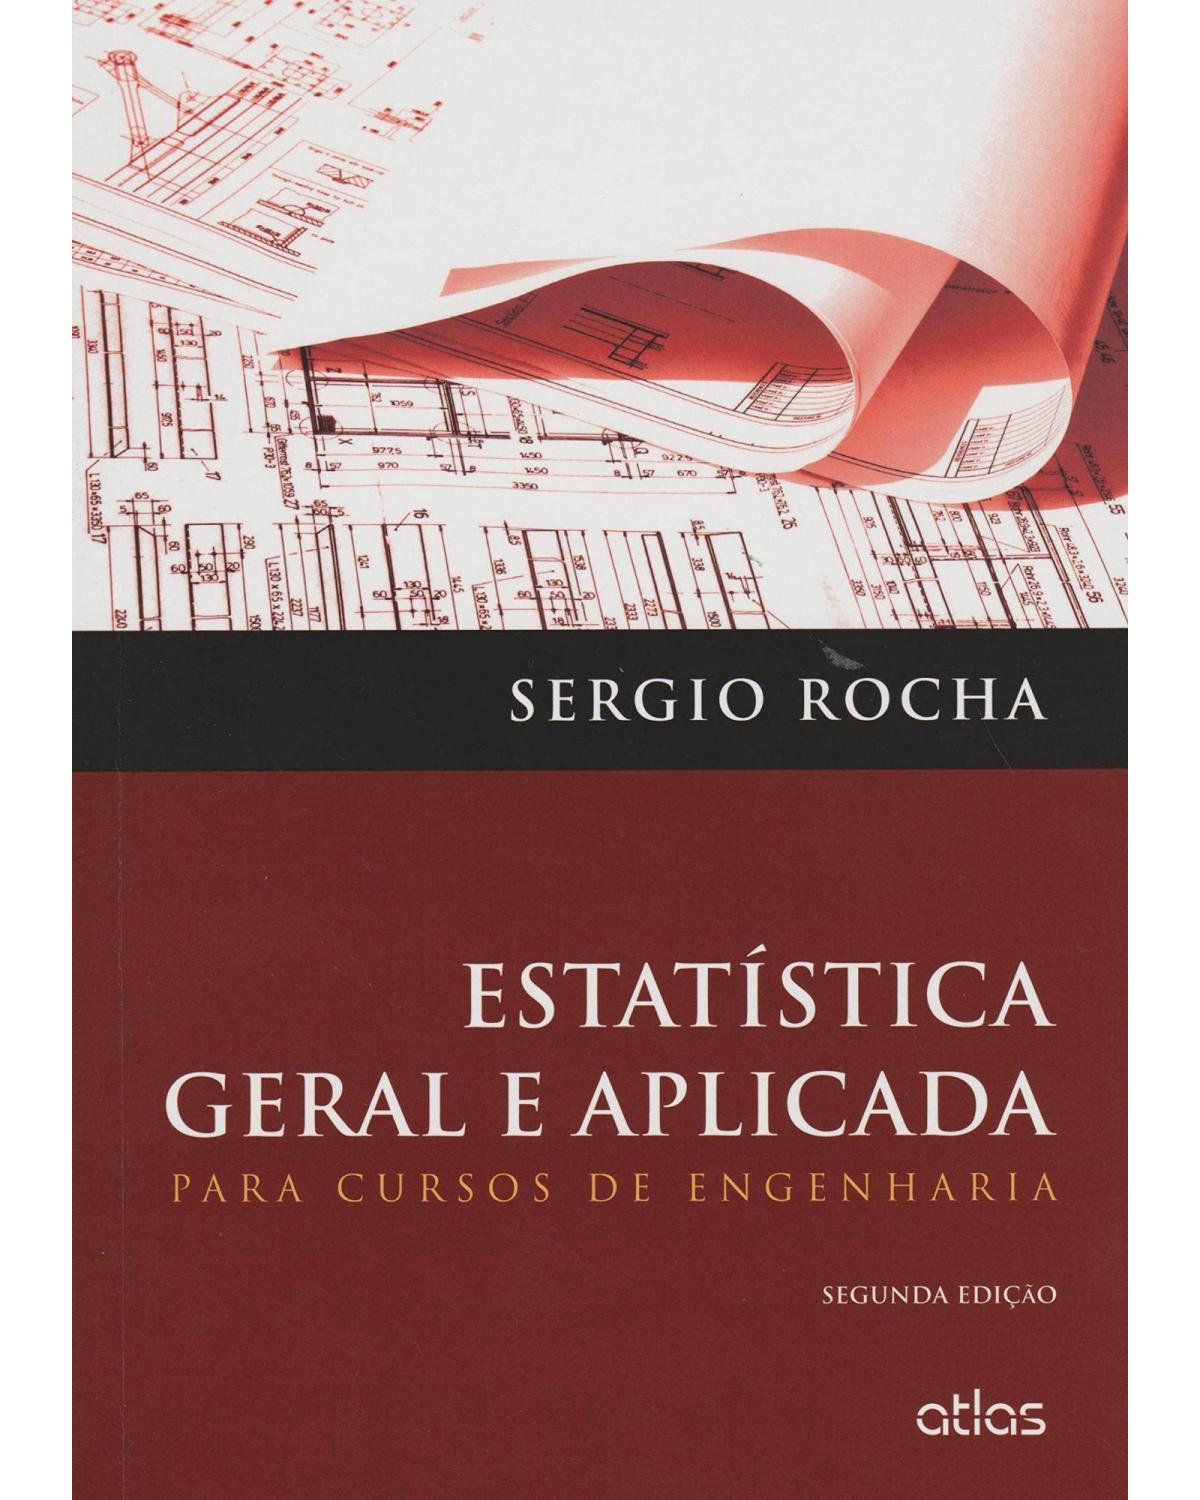 Estatística geral e aplicada - Para cursos de engenharia - 2ª Edição | 2015